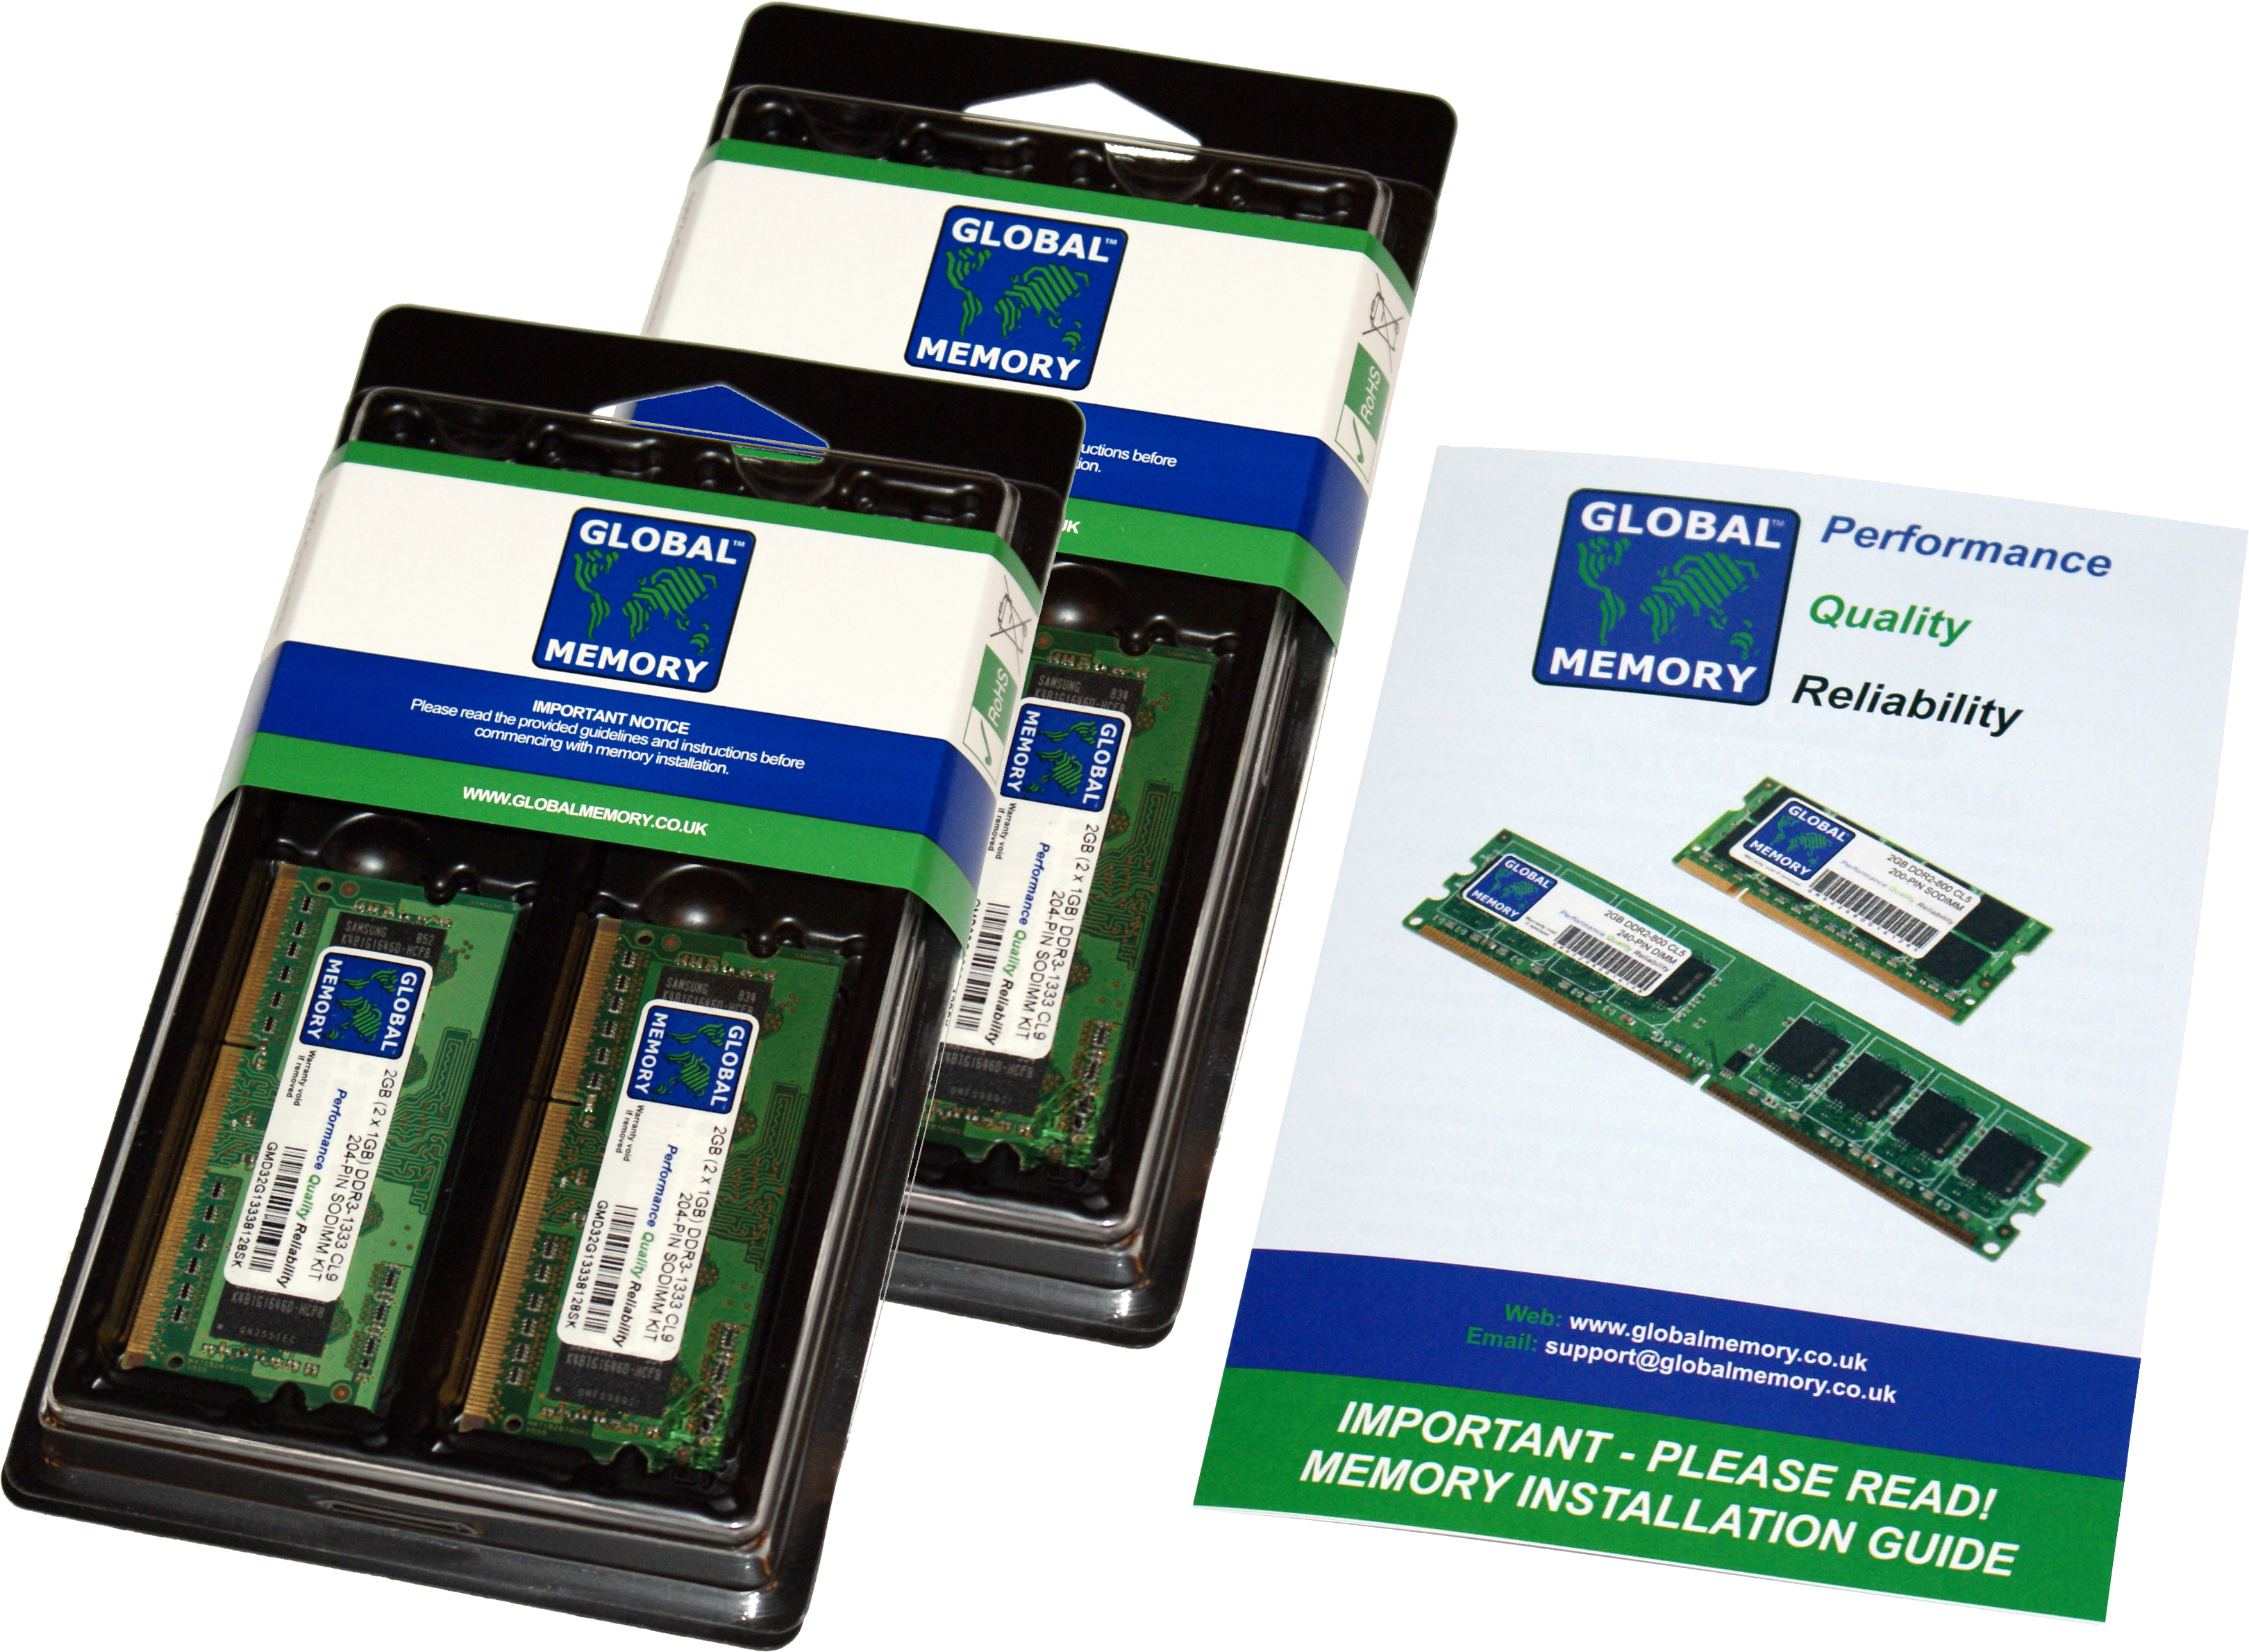 16GB (4 x 4GB) DDR4 2133MHz PC4-17000 260-PIN SODIMM MEMORY RAM KIT FOR FUJITSU LAPTOPS/NOTEBOOKS